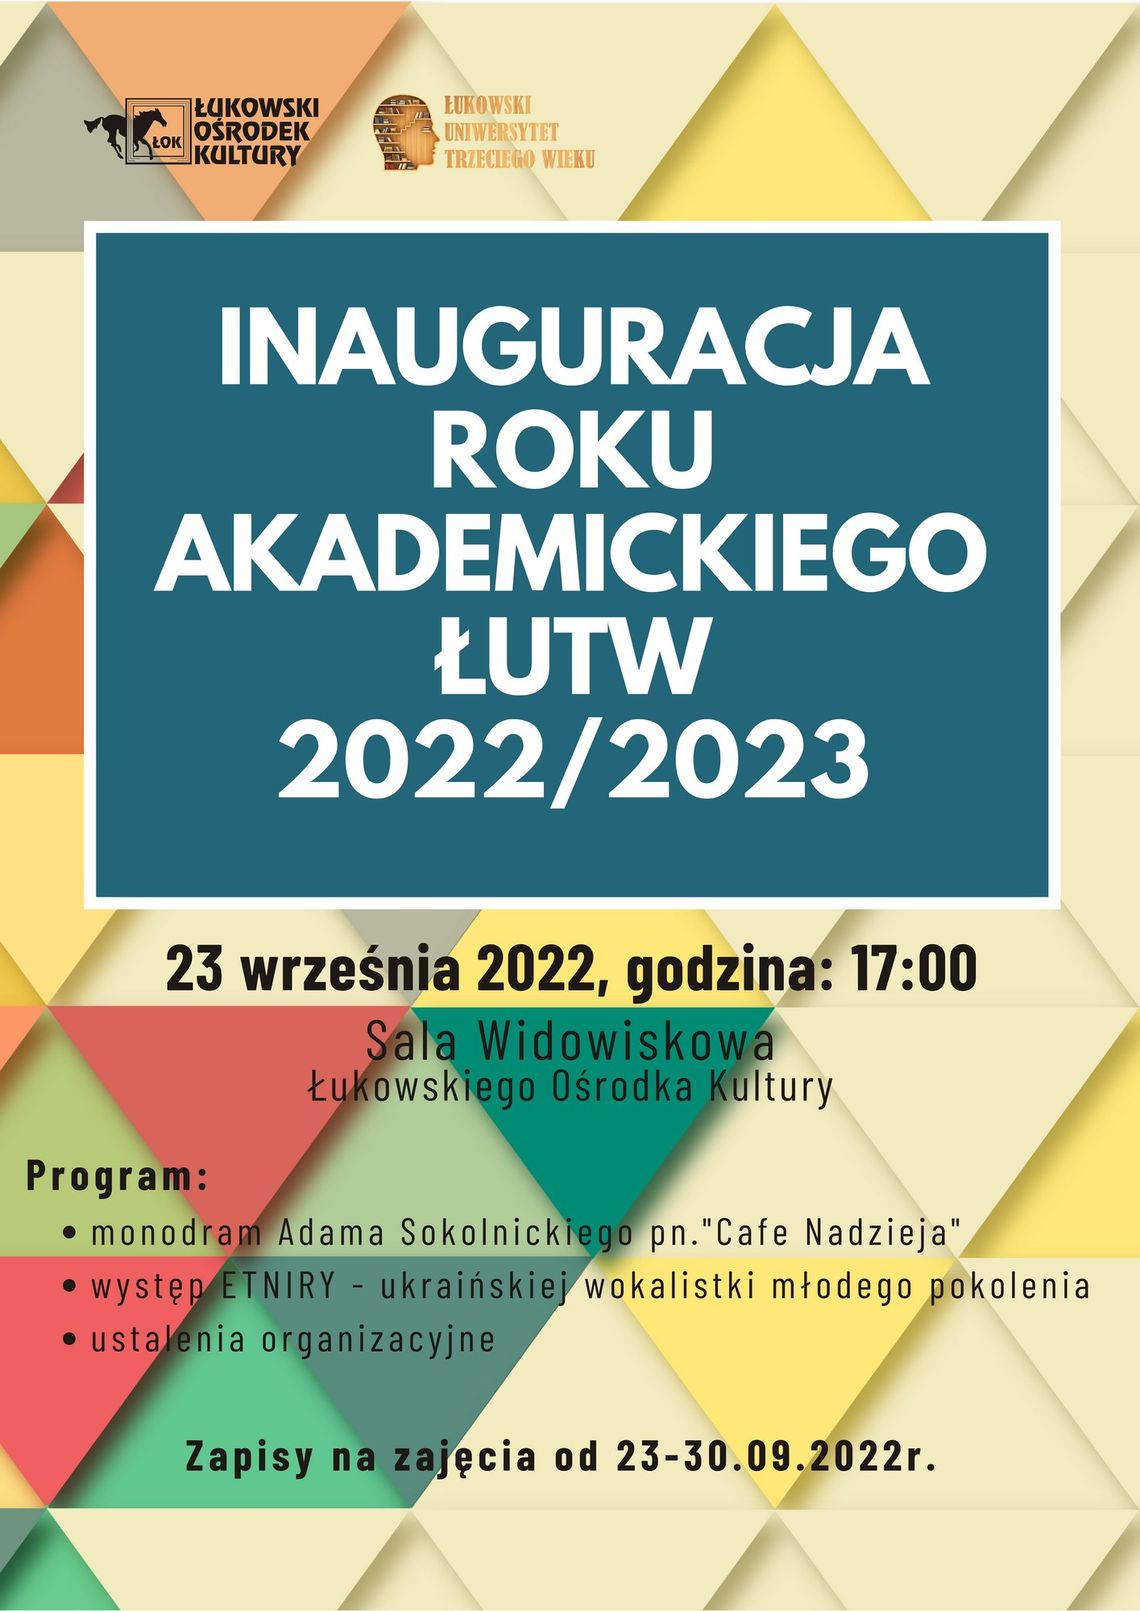 Inauguracja roku akademickiego ŁUTW 2022/2023